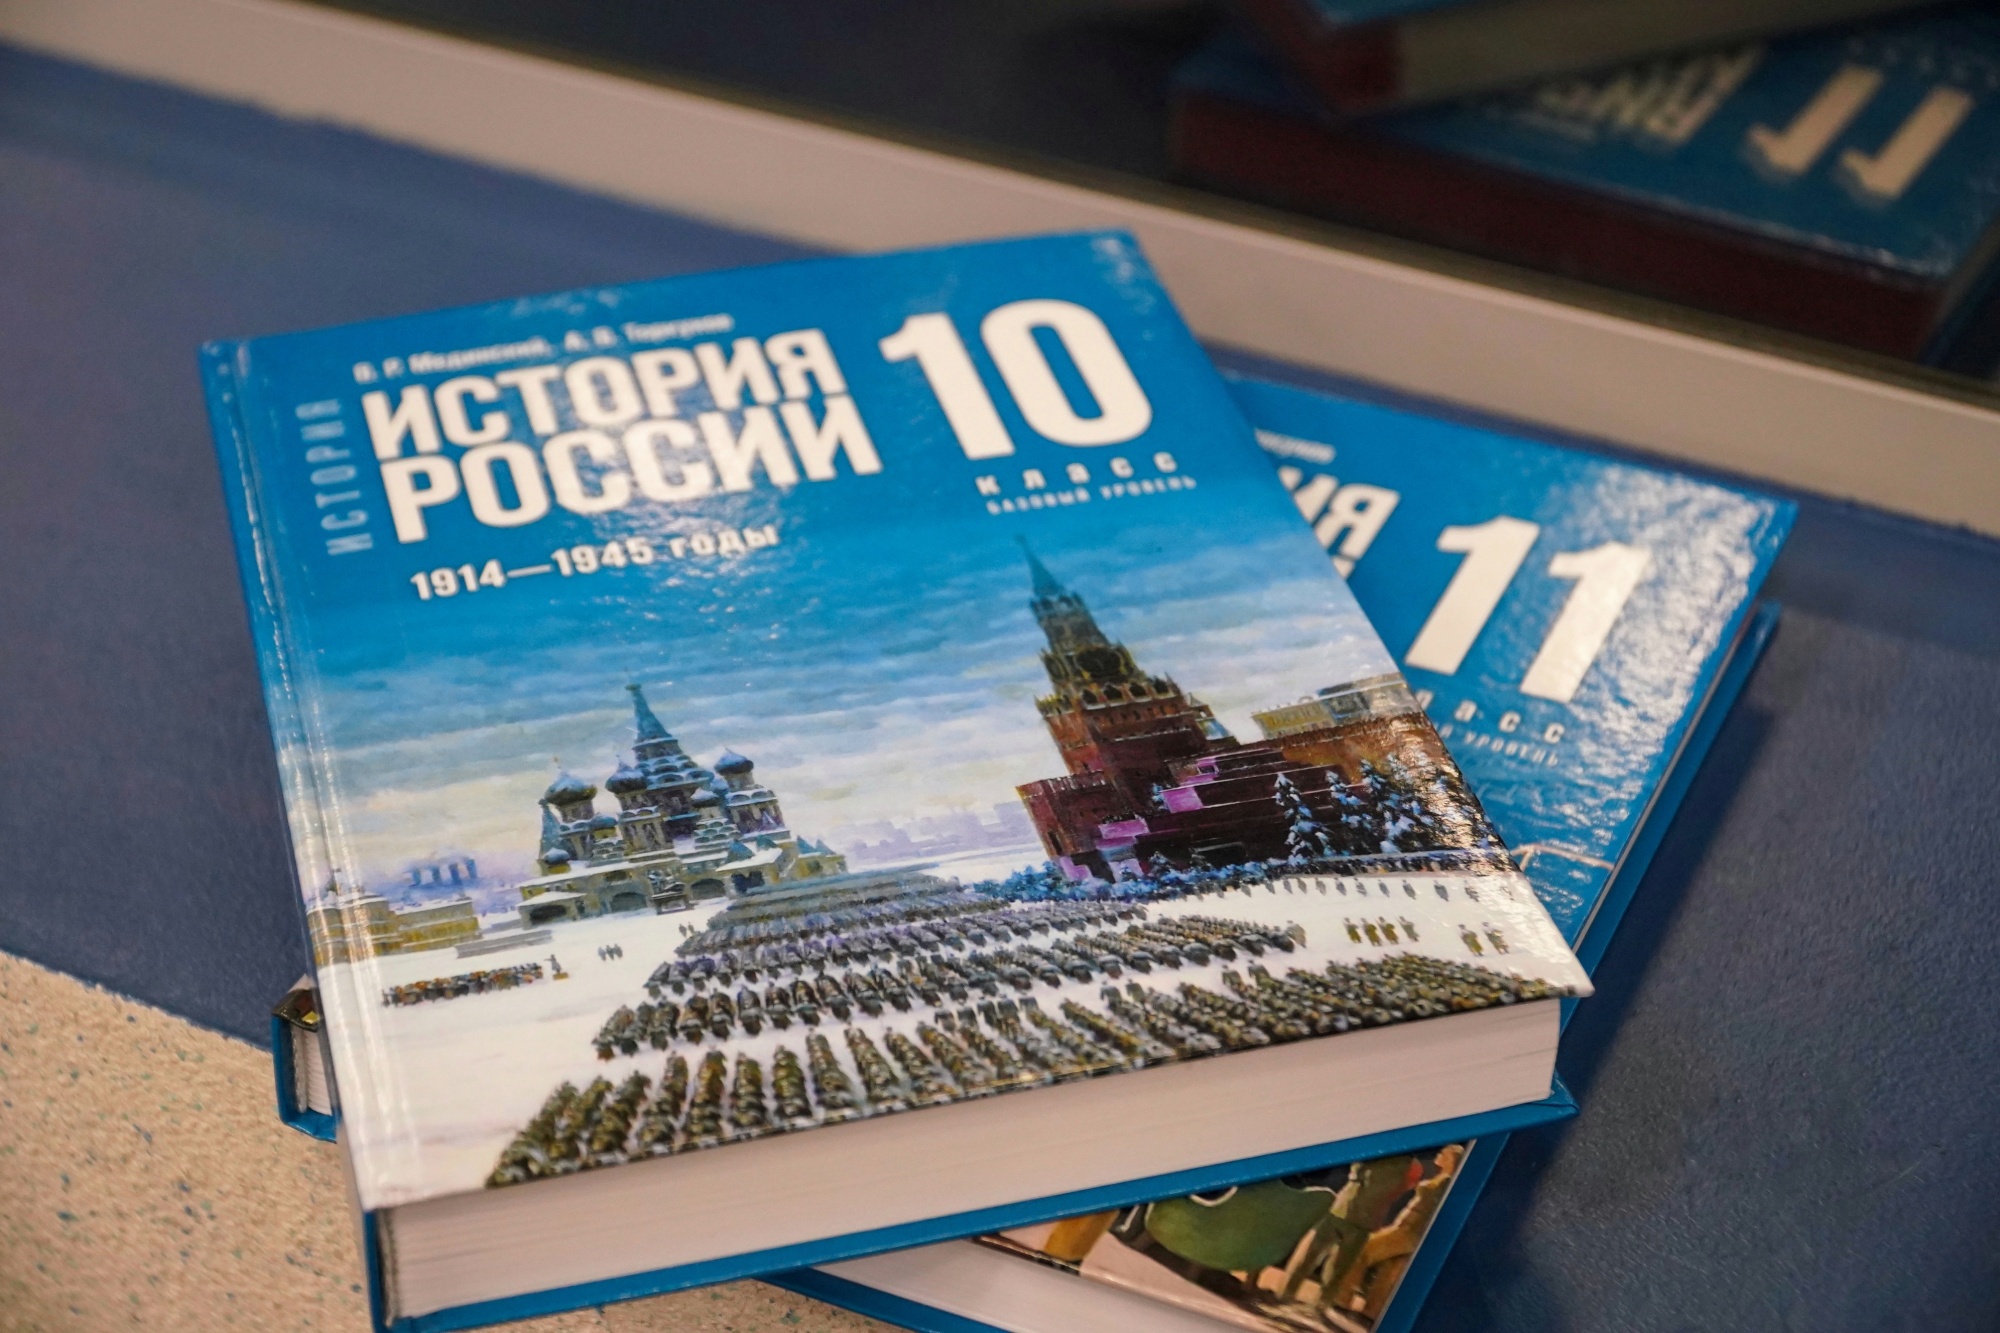 Новые учебники История России и Всеобщая история, для 10-х и 11-х классов